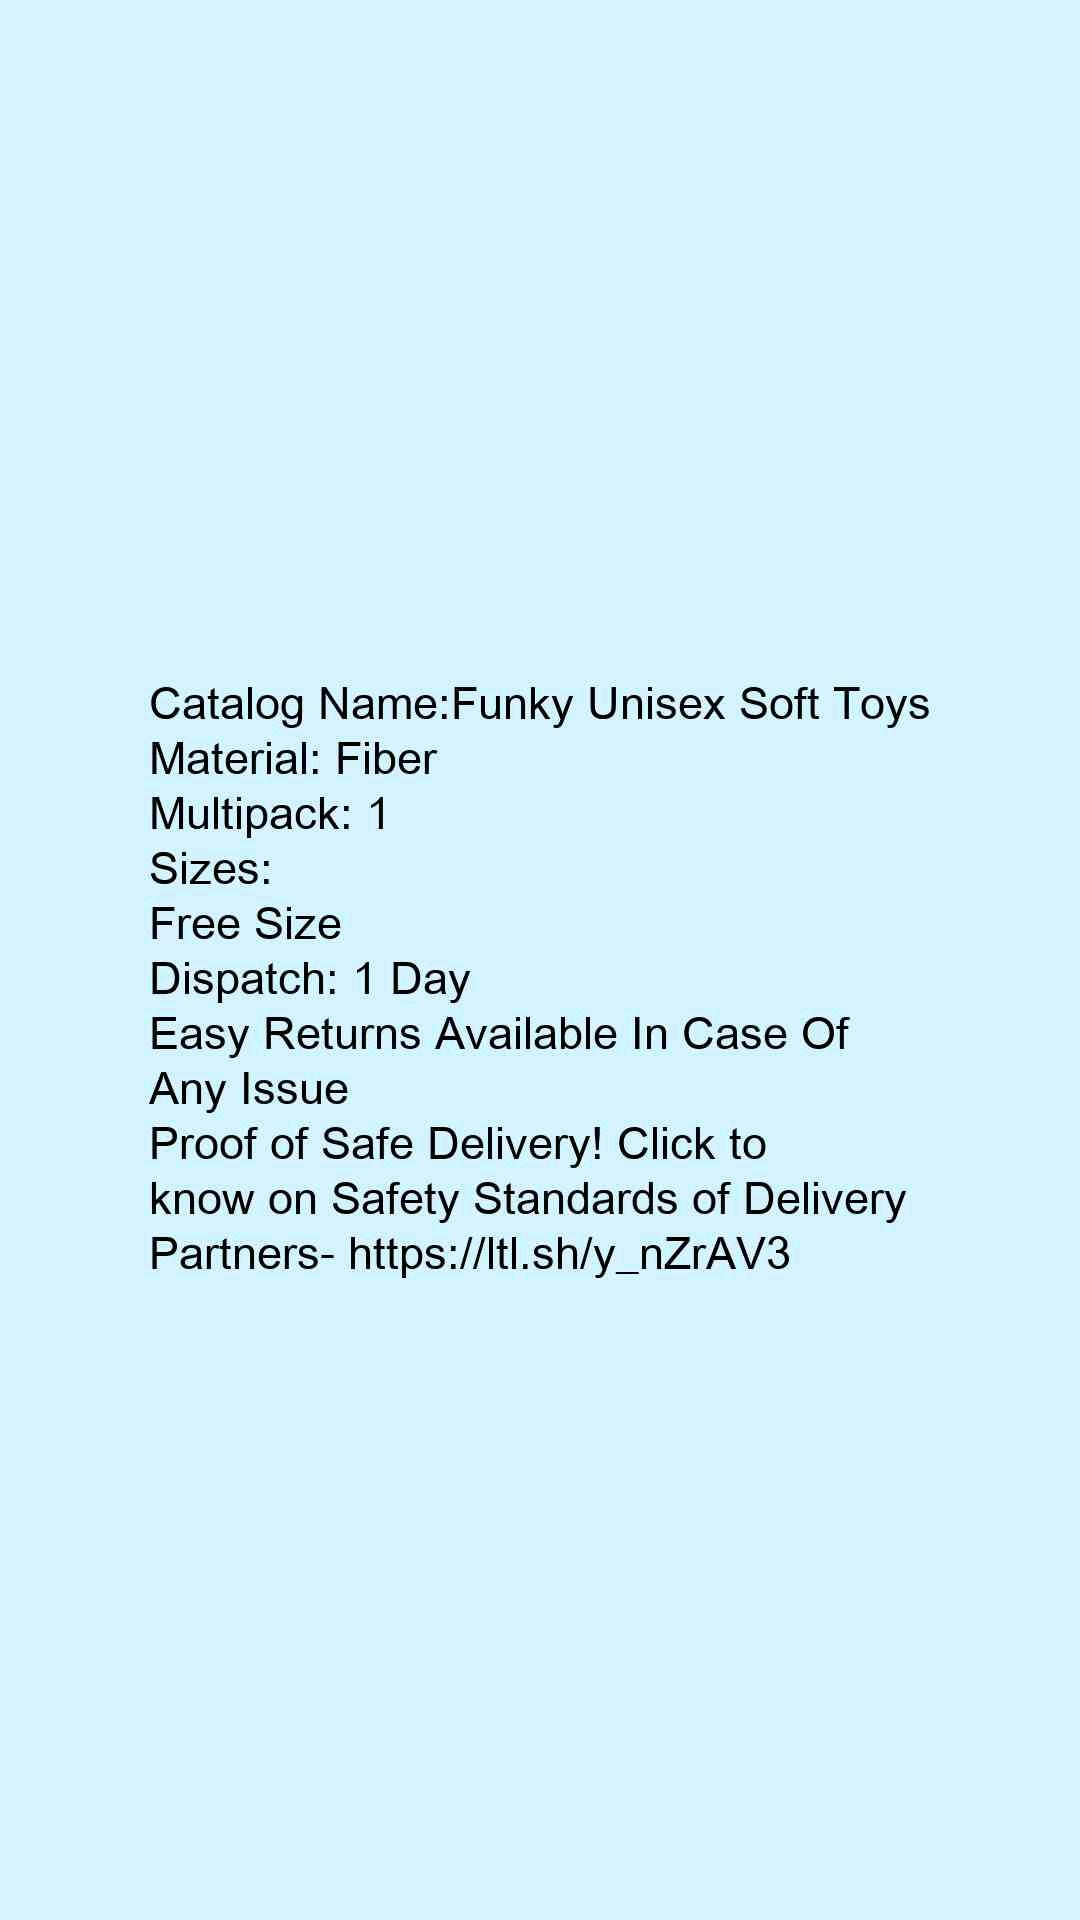 Funky Unisex Soft Toys